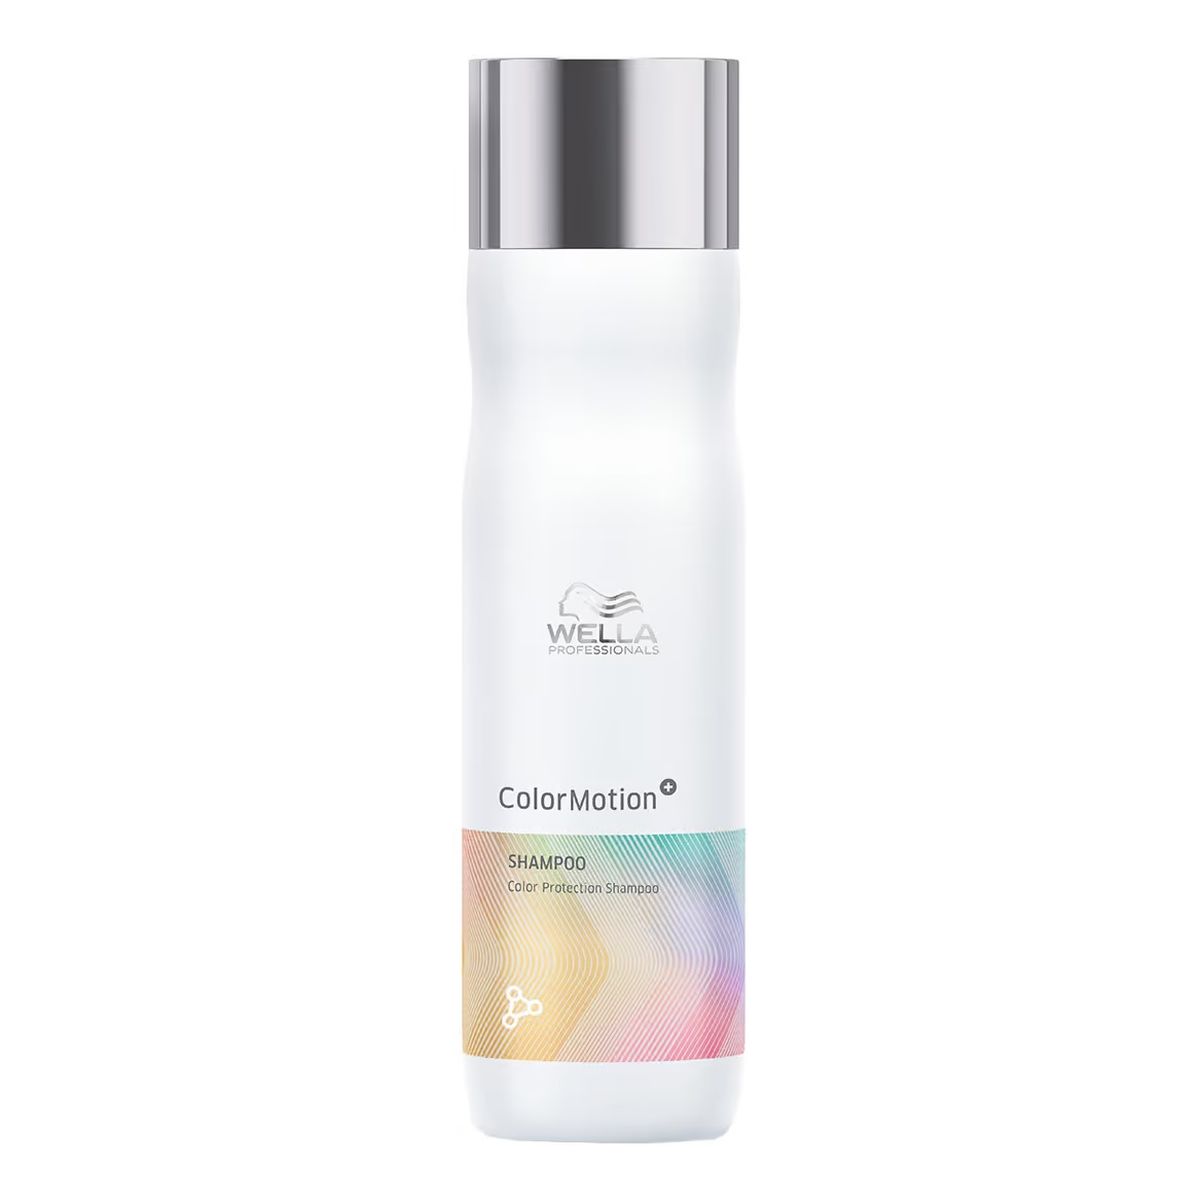 Wella Professionals Colormotion+ shampoo szampon chroniący kolor włosów 250ml